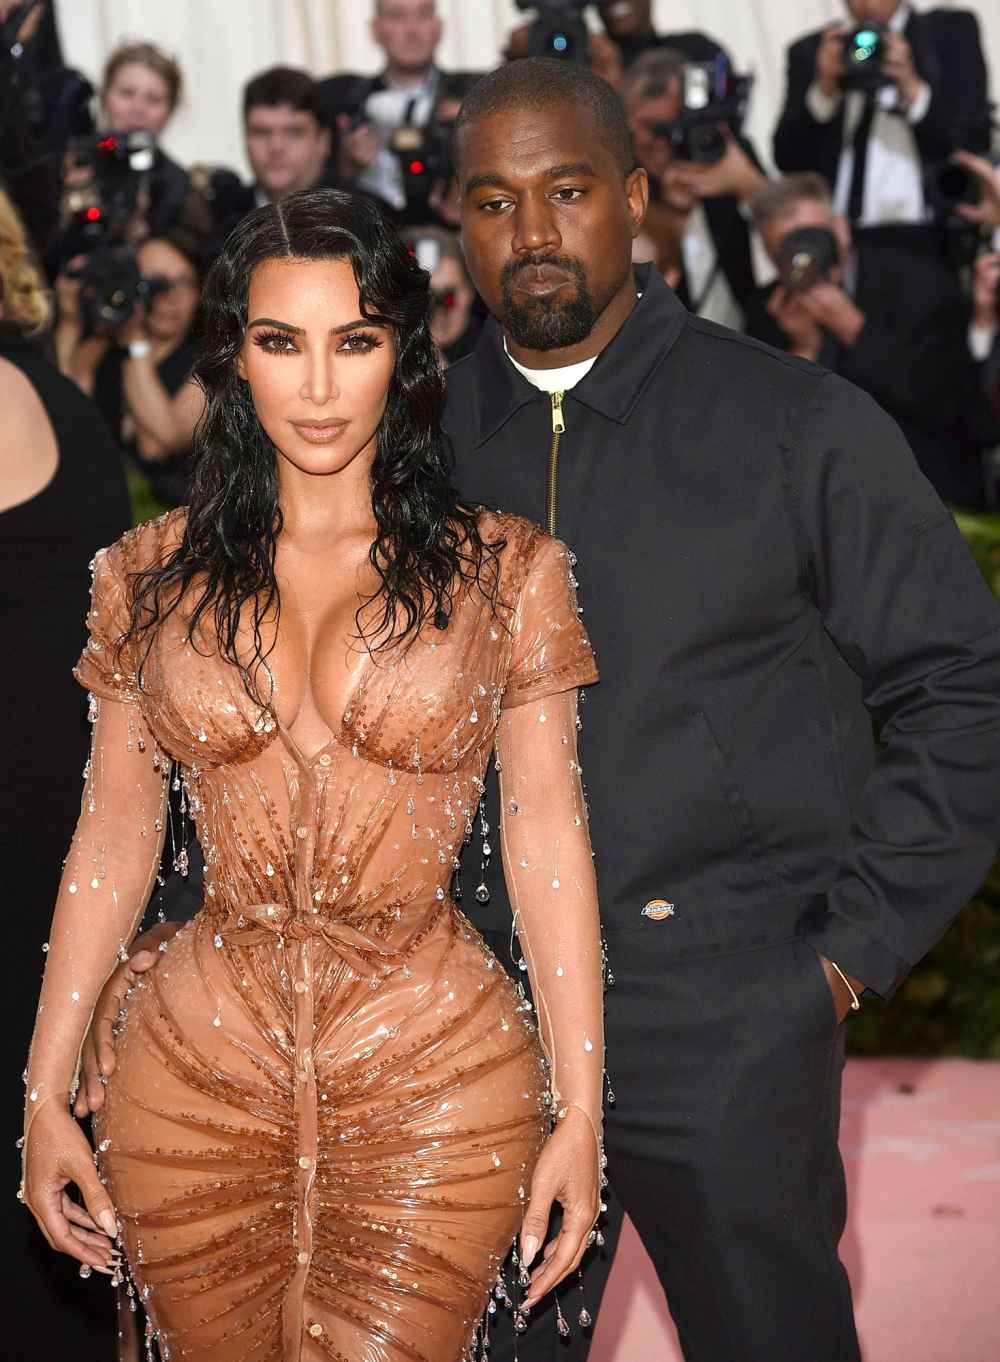 Kim Kardashian at Peace As Kanye West Divorce Looms Met Gala